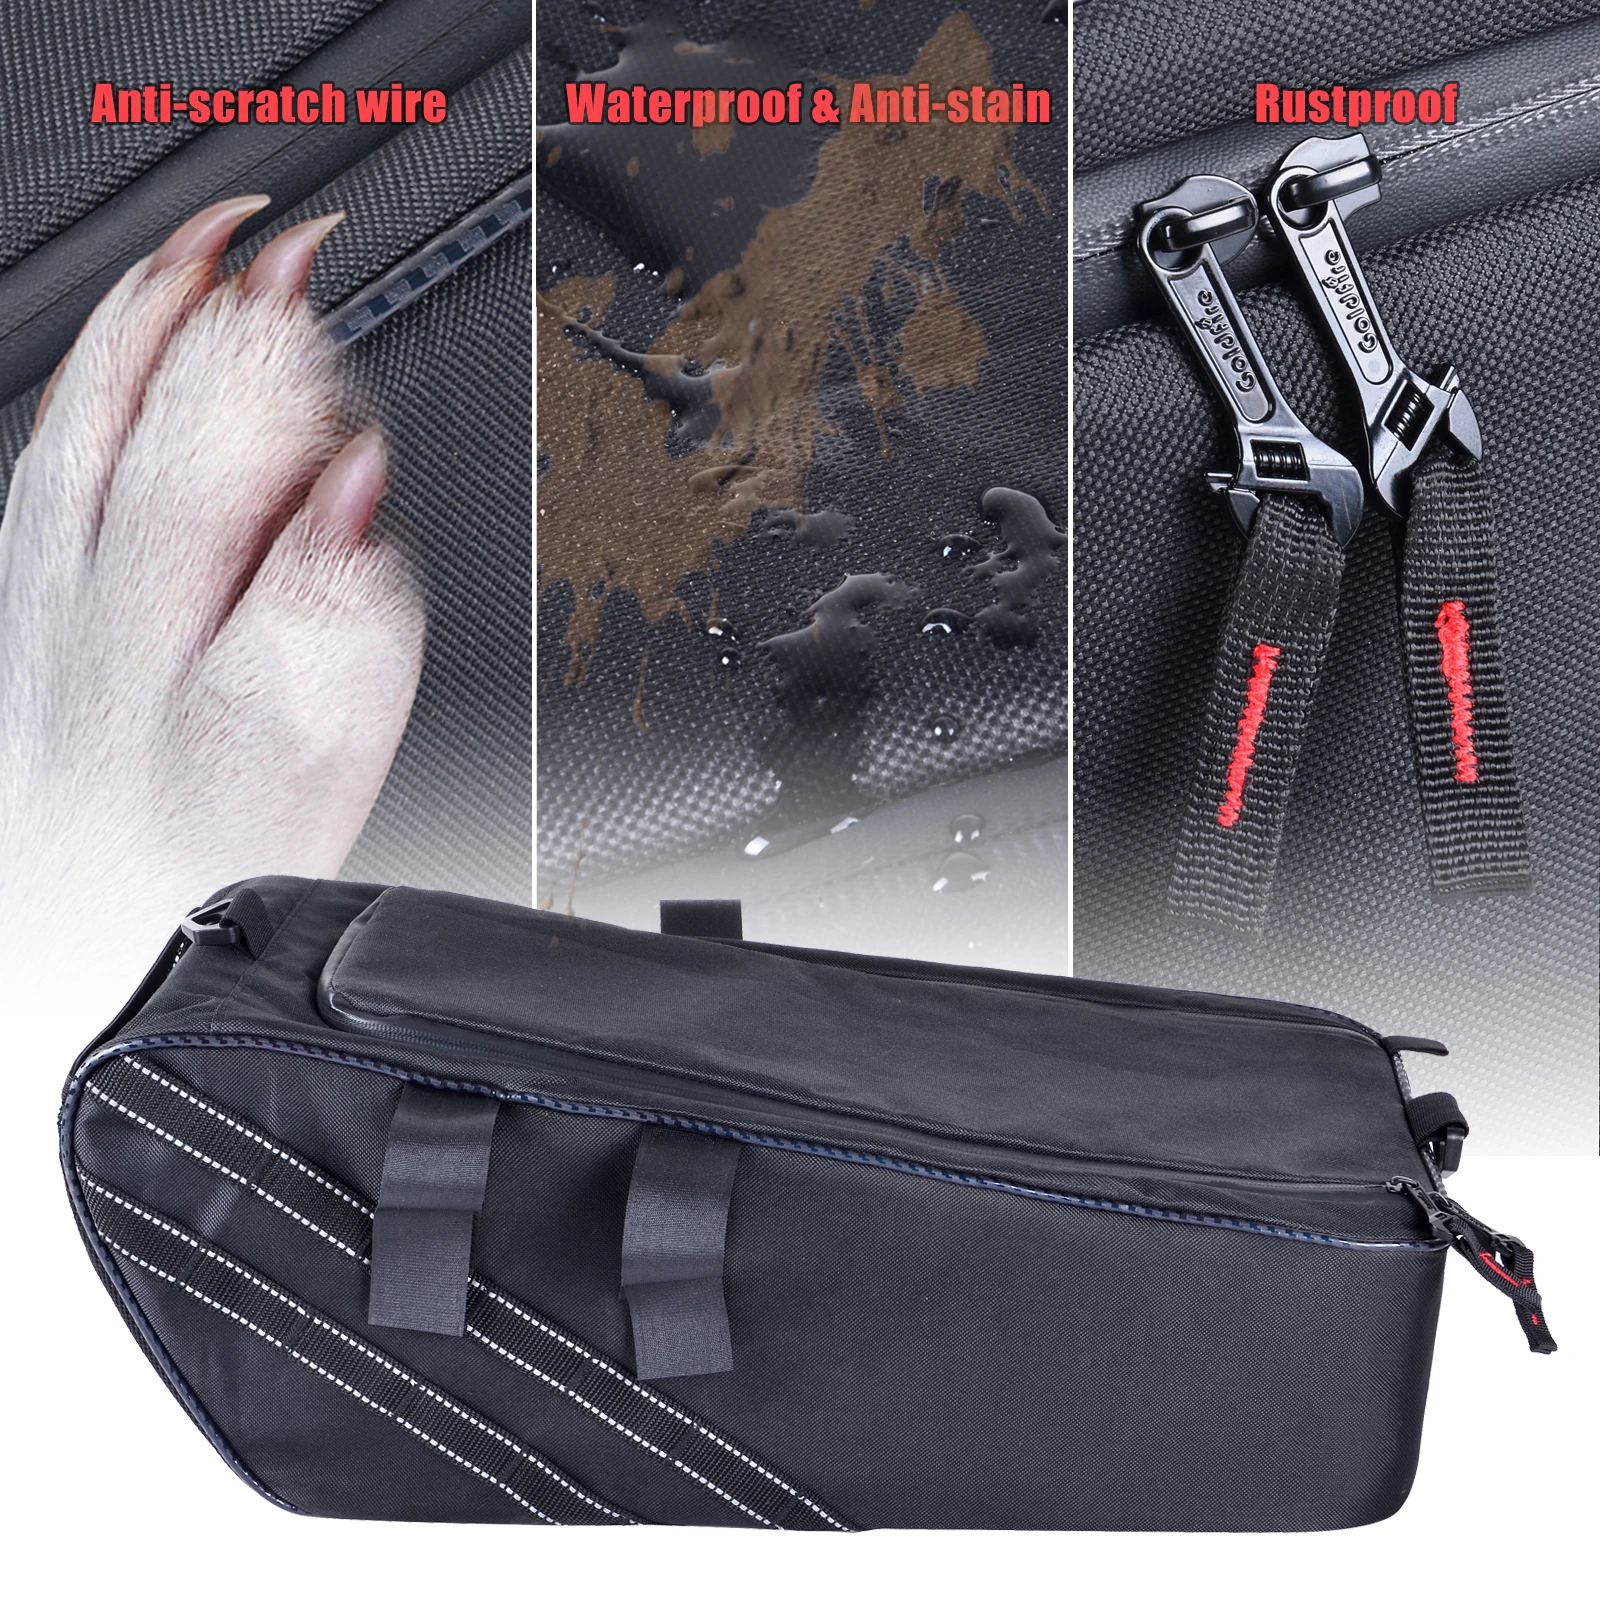 Black Motorcycle Rear Back Seat Bags Under Seat Cargo Storage Bag Luggage Waterproof Backpack For Honda Ruckus Zoomer 2010-2021 enlarge